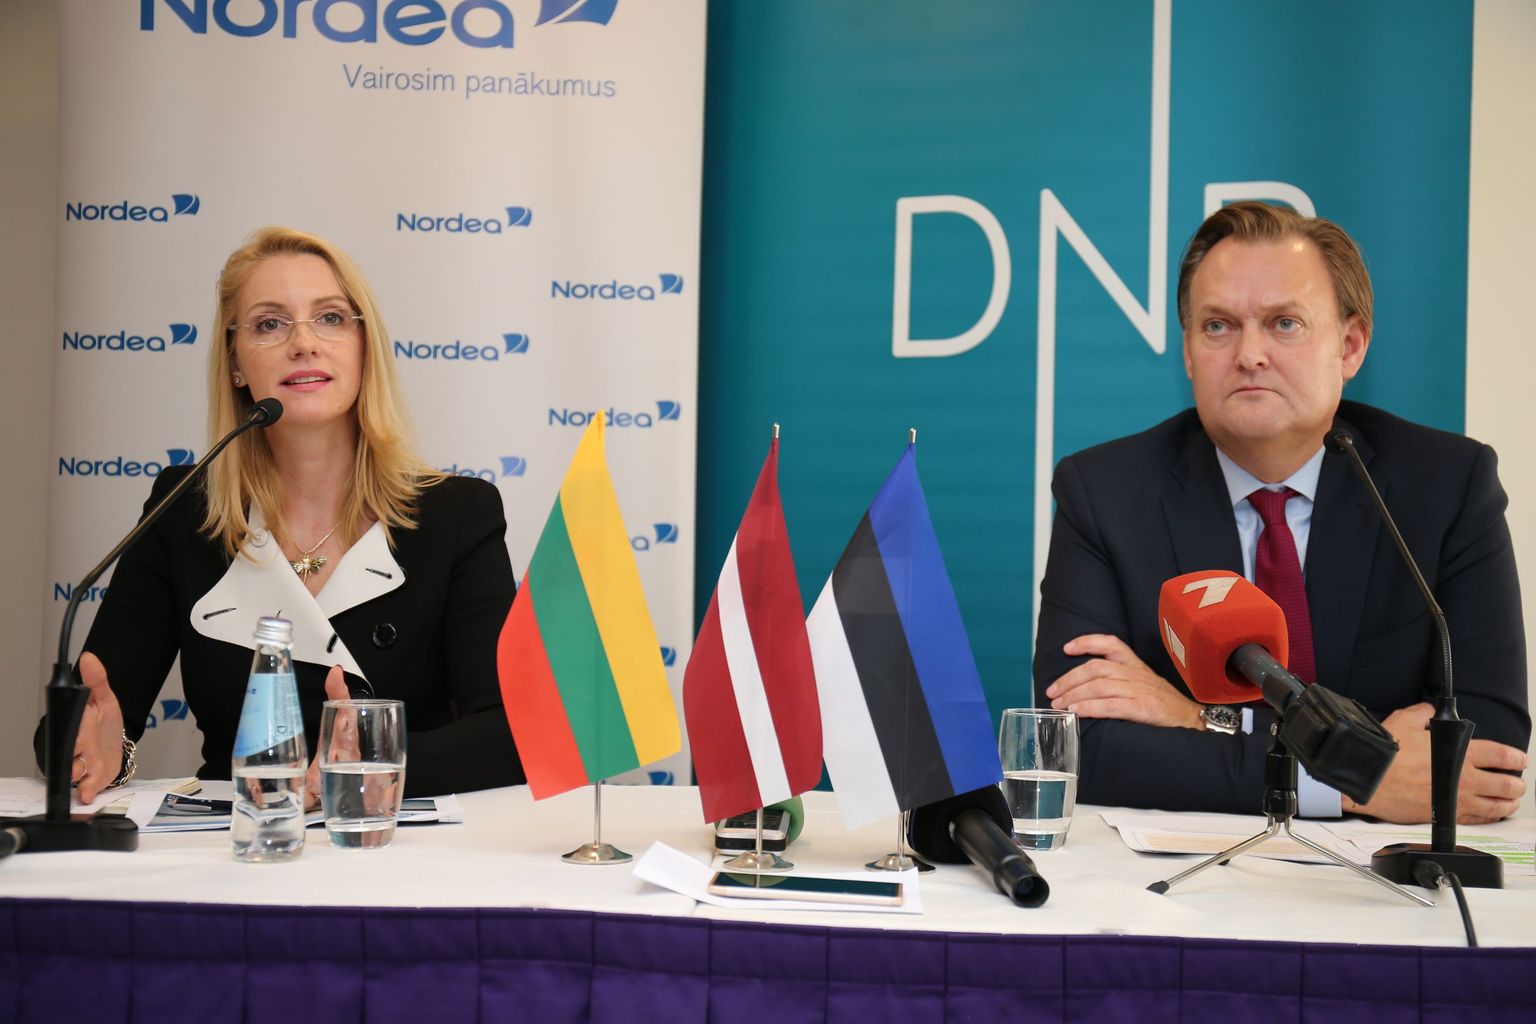 Nordea panganduse juht Inga Skisaker ja DNB esindaja Mats Wermelin Riias toimunud pressikonverentsil.